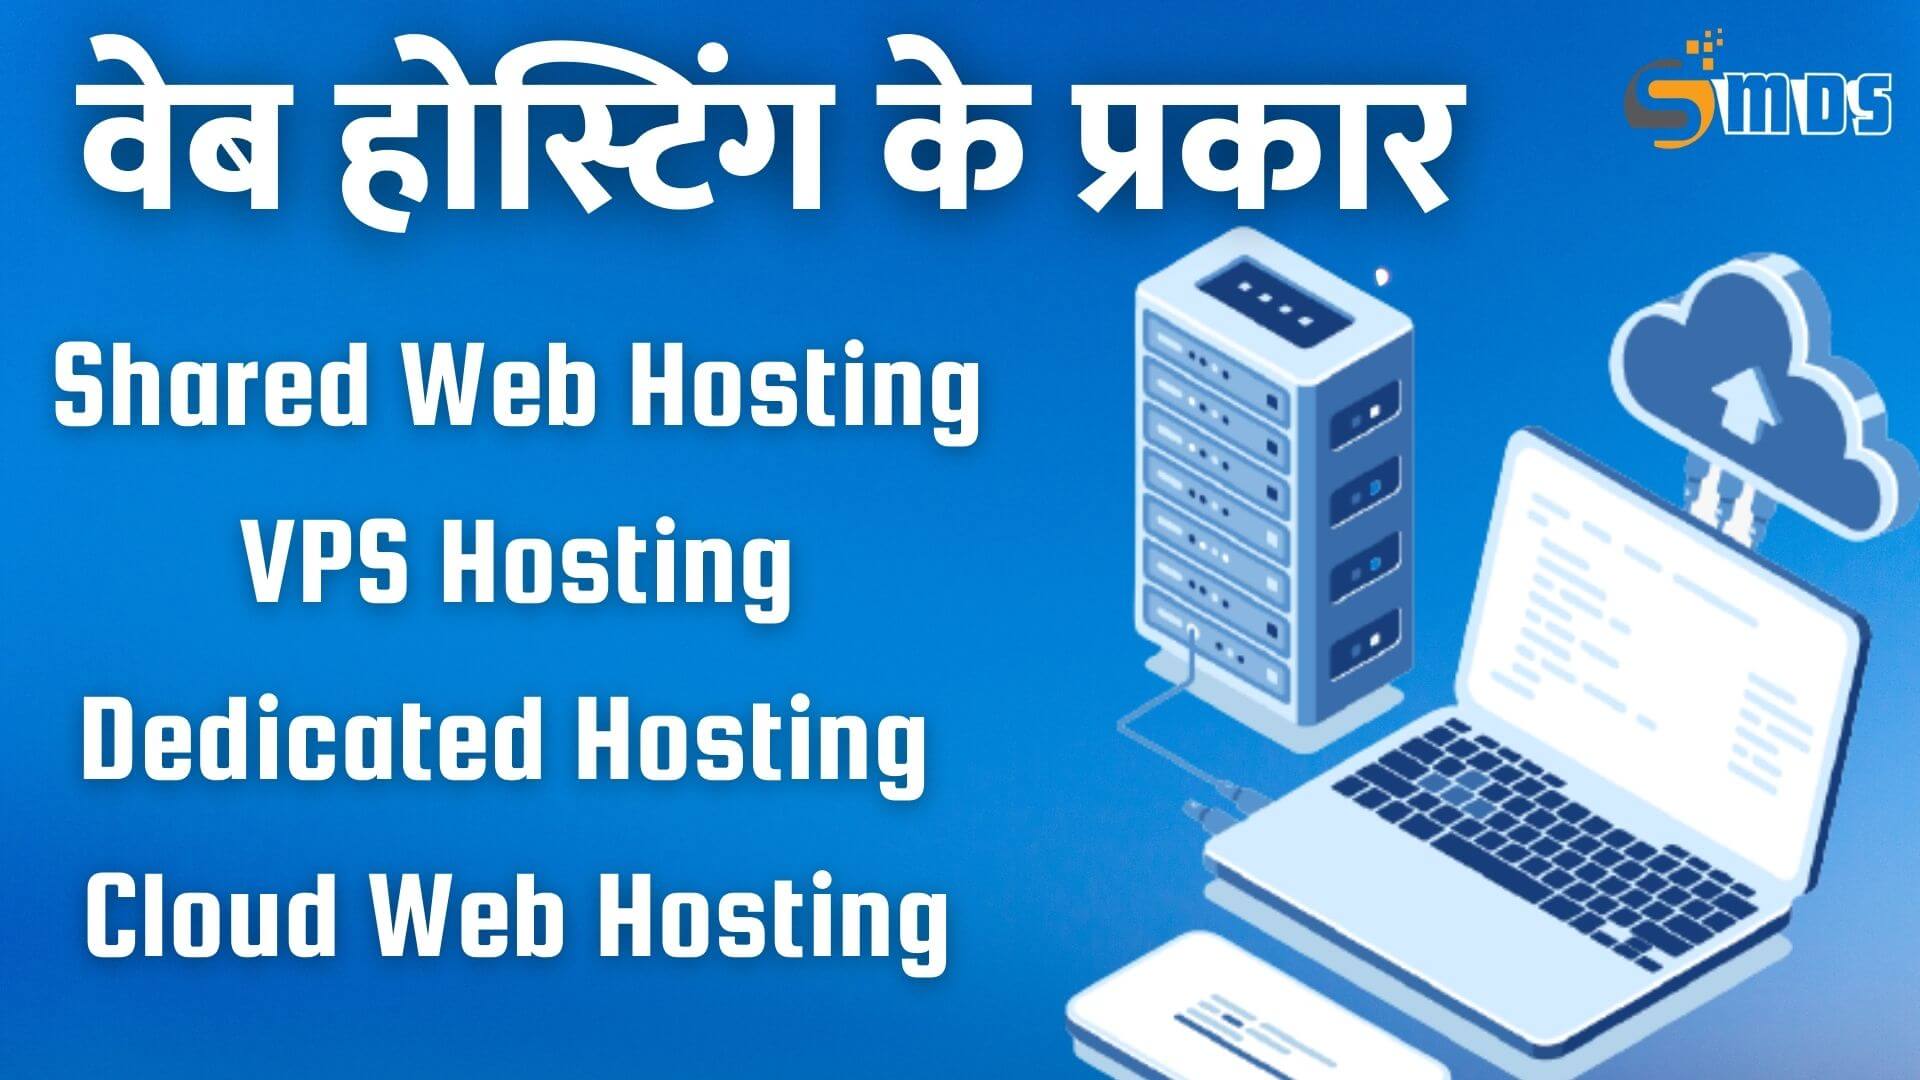 वेब होस्टिंग के प्रकार, Types of Web hosting in Hindi, वेब होस्टिंग कितने प्रकार की होती है